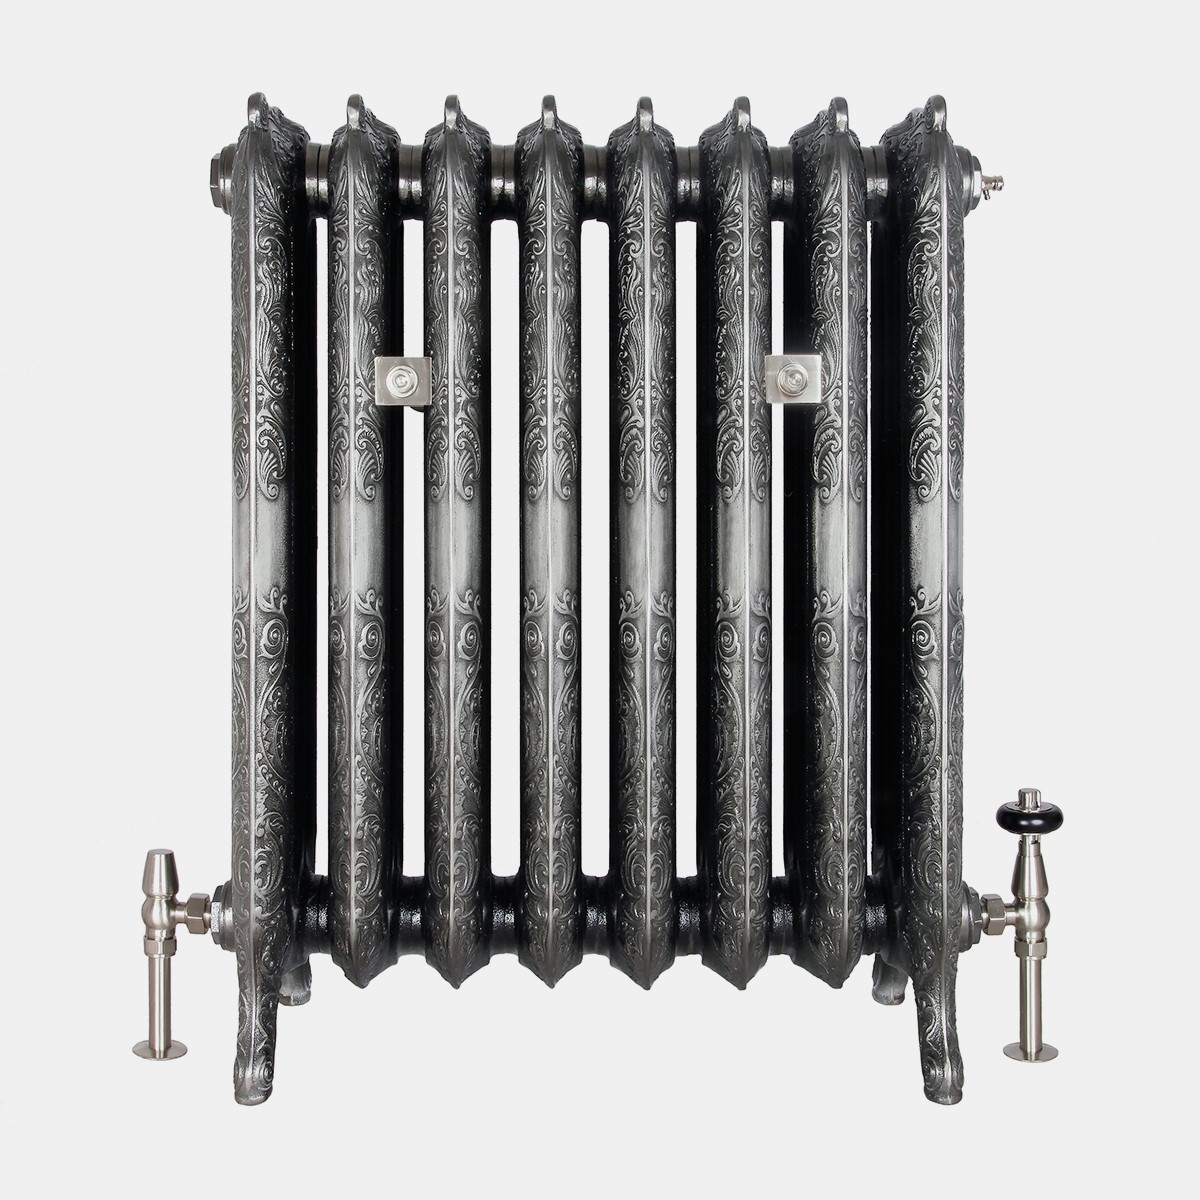 Rococo 3 column 768mm cast iron radiator in satin polish finish